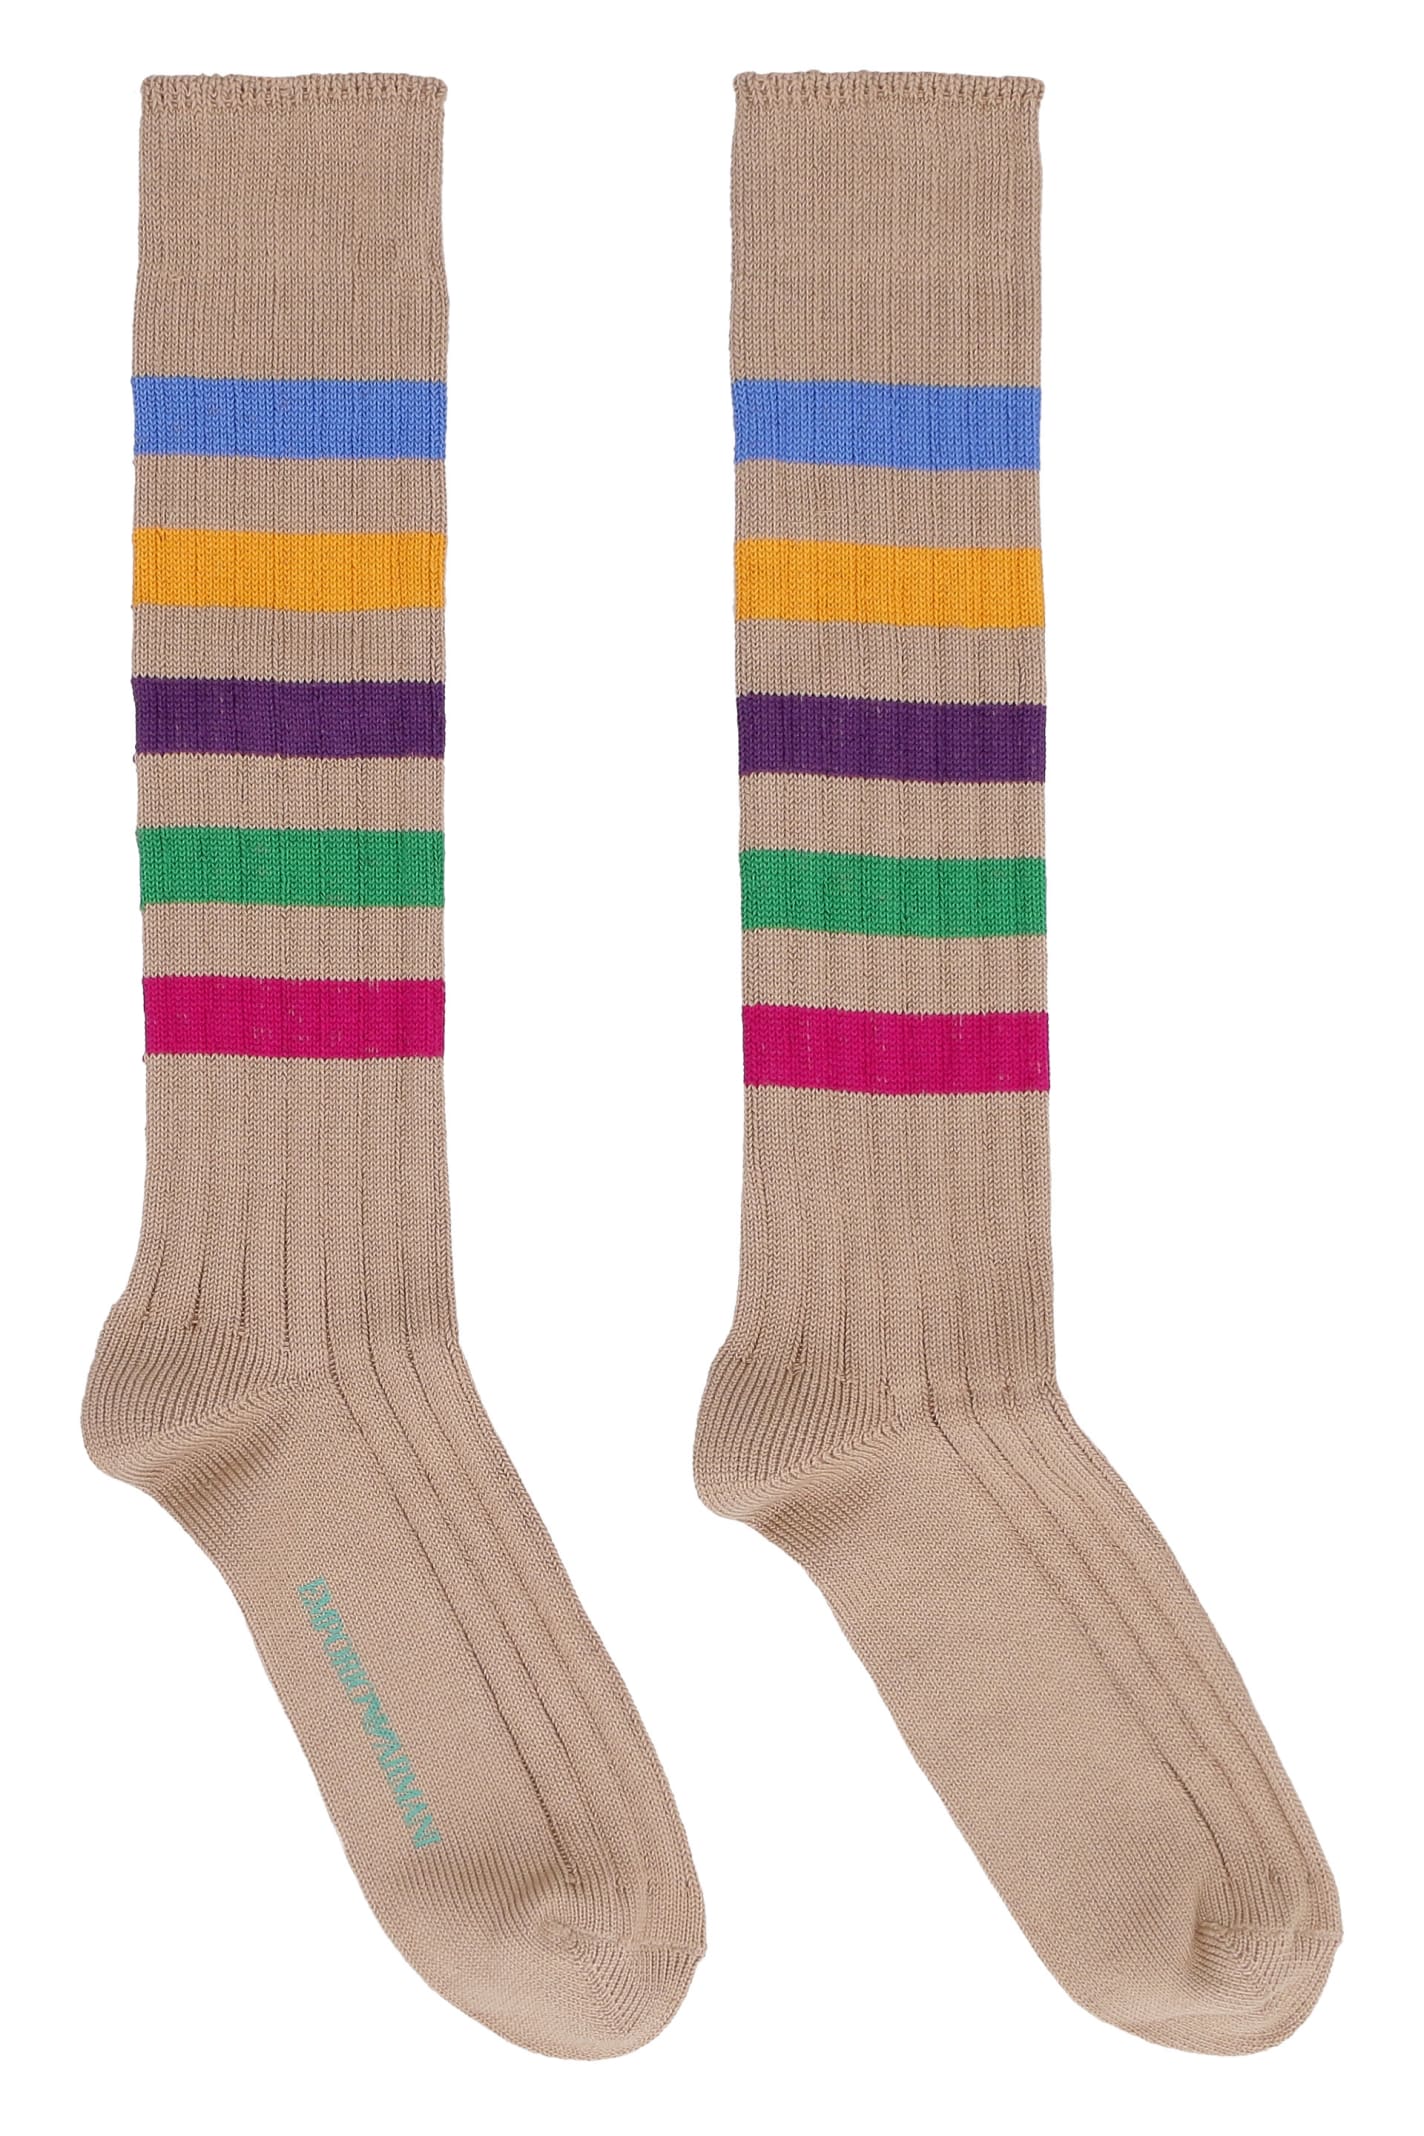 Emporio Armani Sustainability Project - Cotton Socks